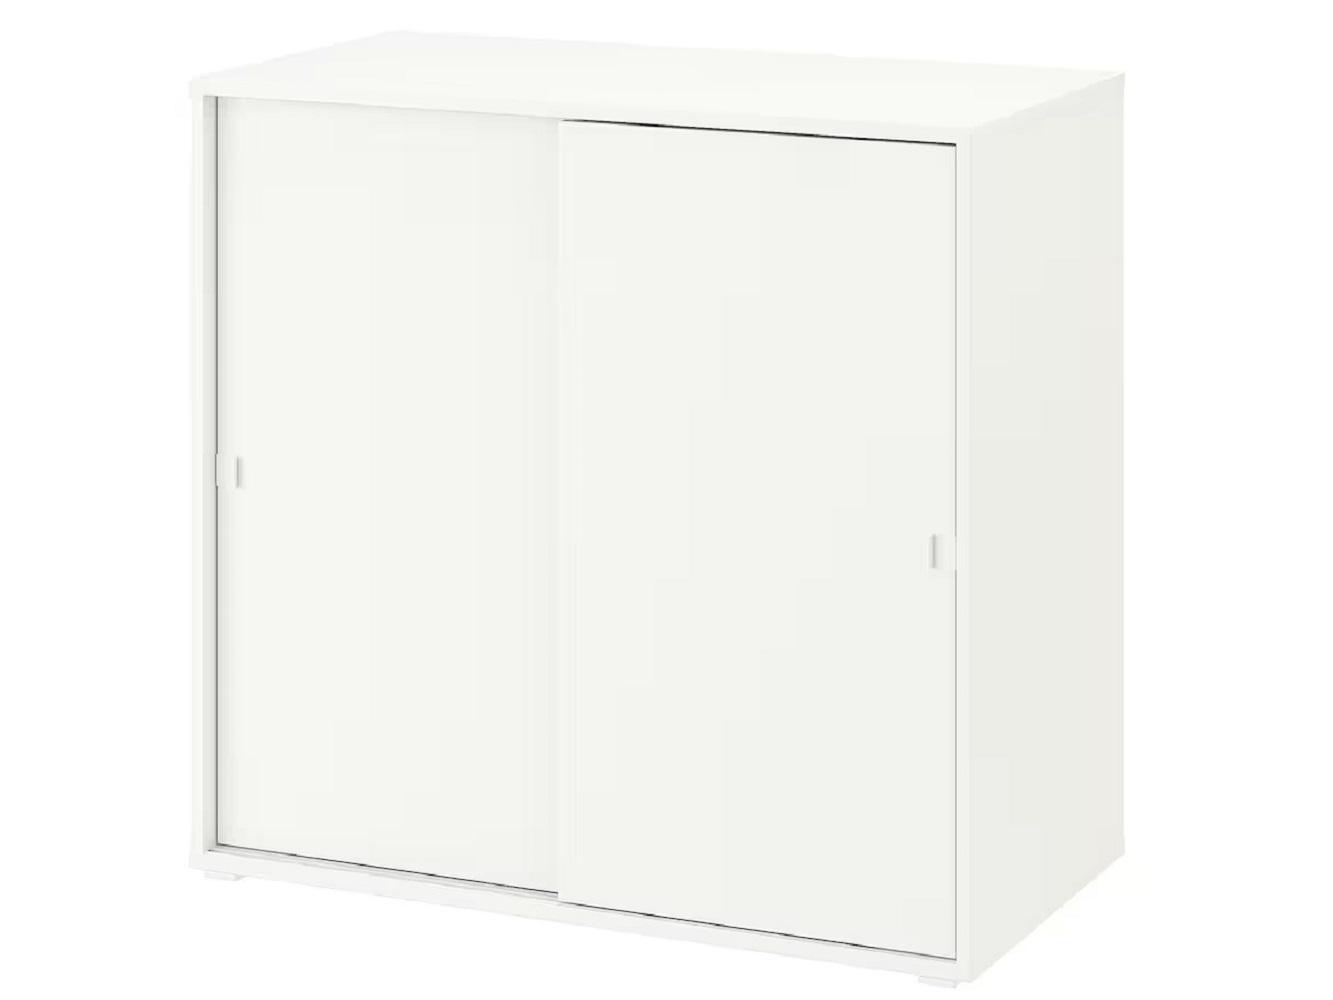 Комод Вихалс 114 white ИКЕА (IKEA)  изображение товара